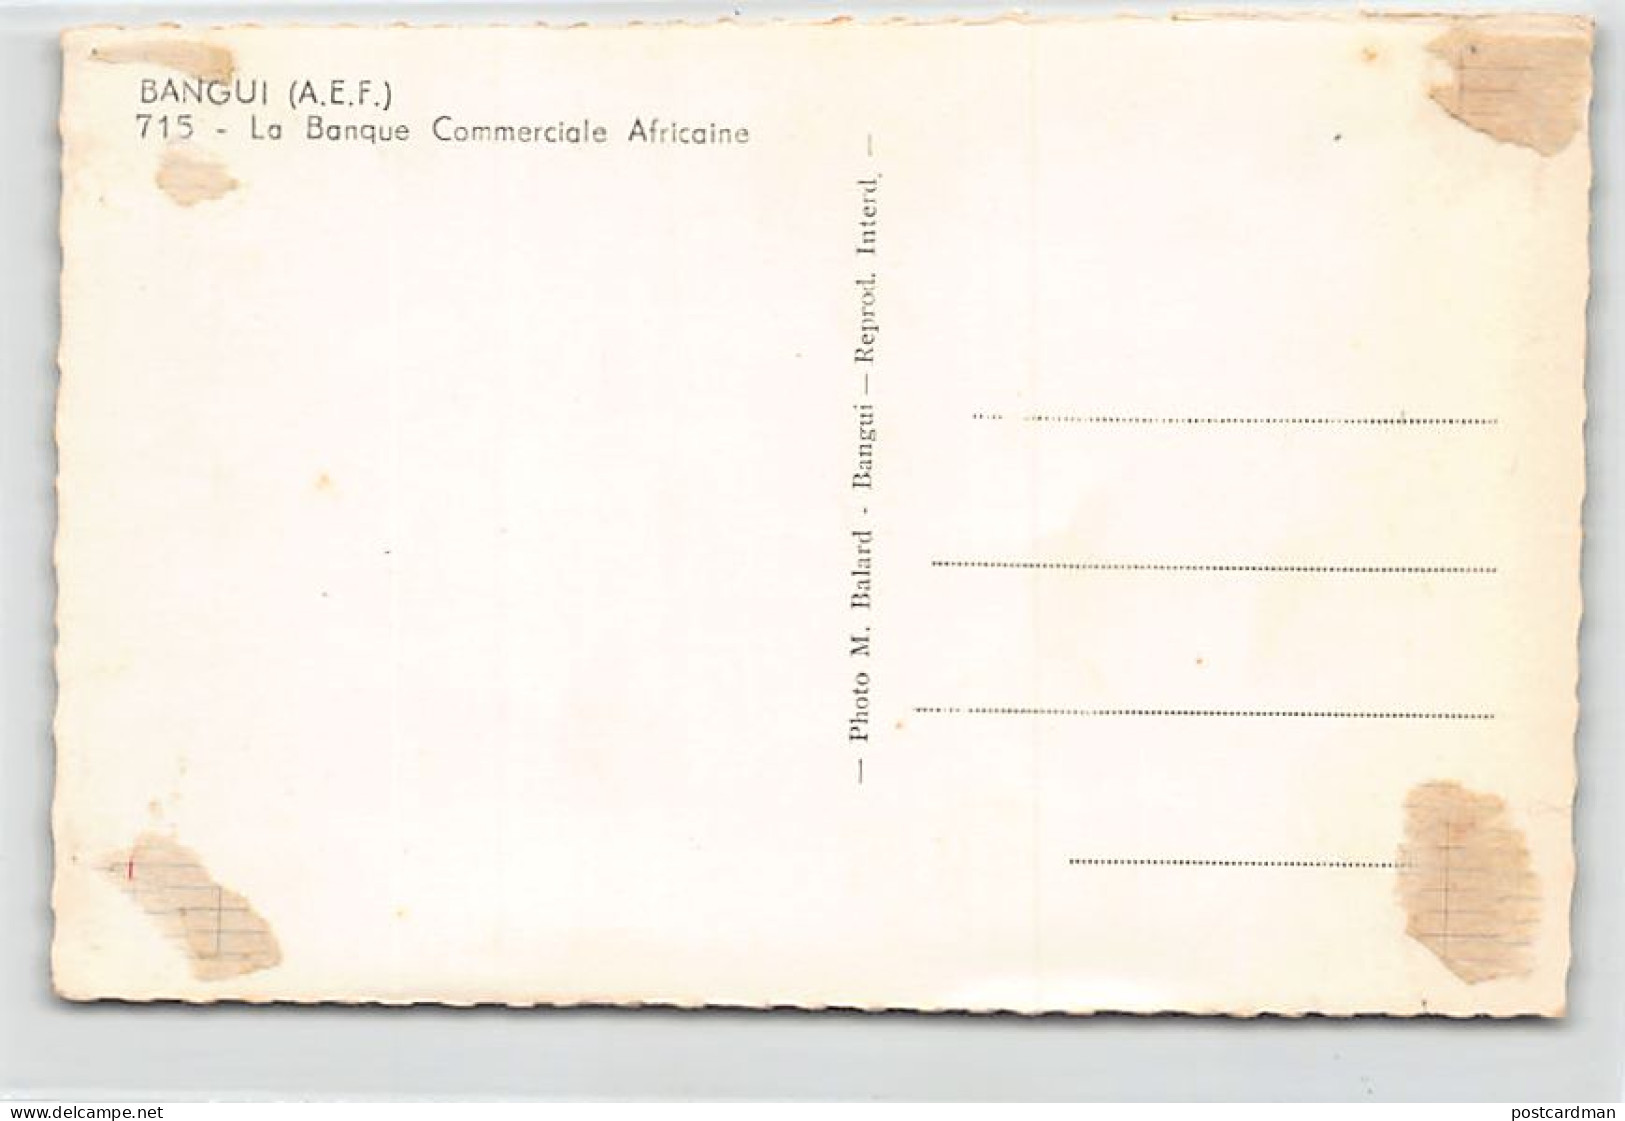 Centrafrique - BANGUI - La Banque Commerciale Africaine - Ed. M. Balard 715 - Centraal-Afrikaanse Republiek